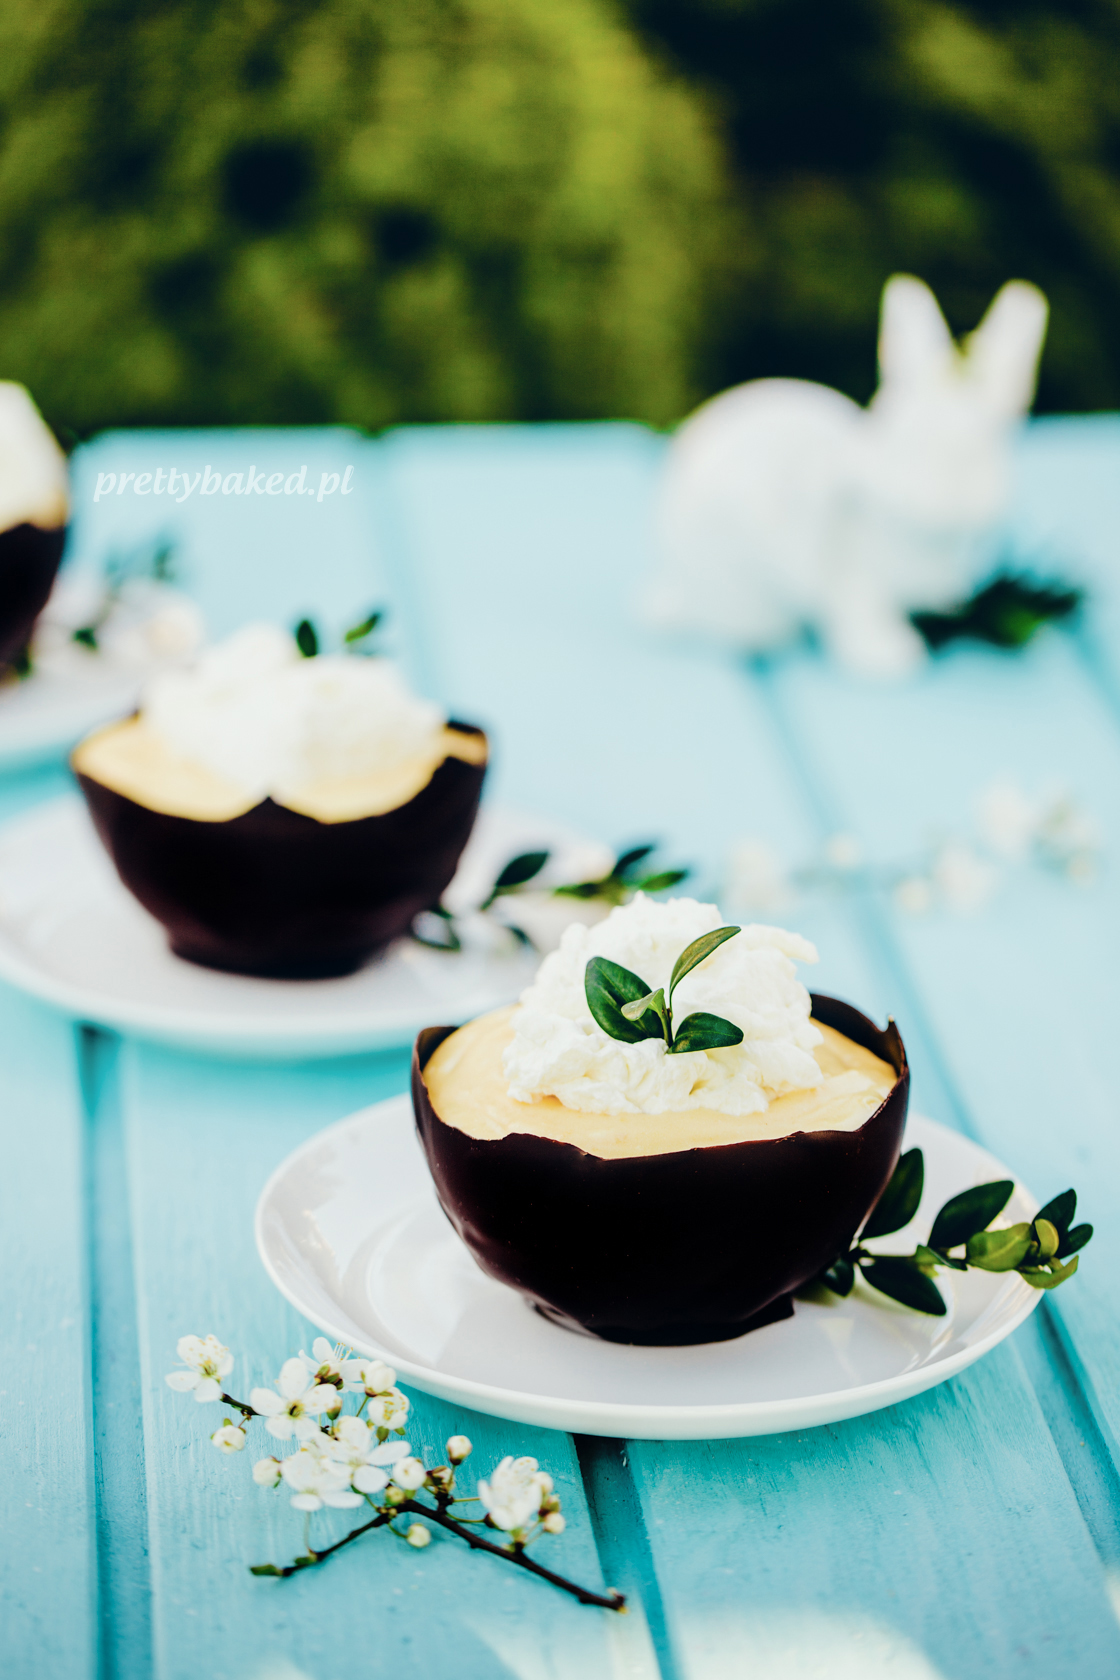 prettybaked prettybaked.pl Easter chocolate spring lemon bundt cream mousse cake bowl baking dessert sweet